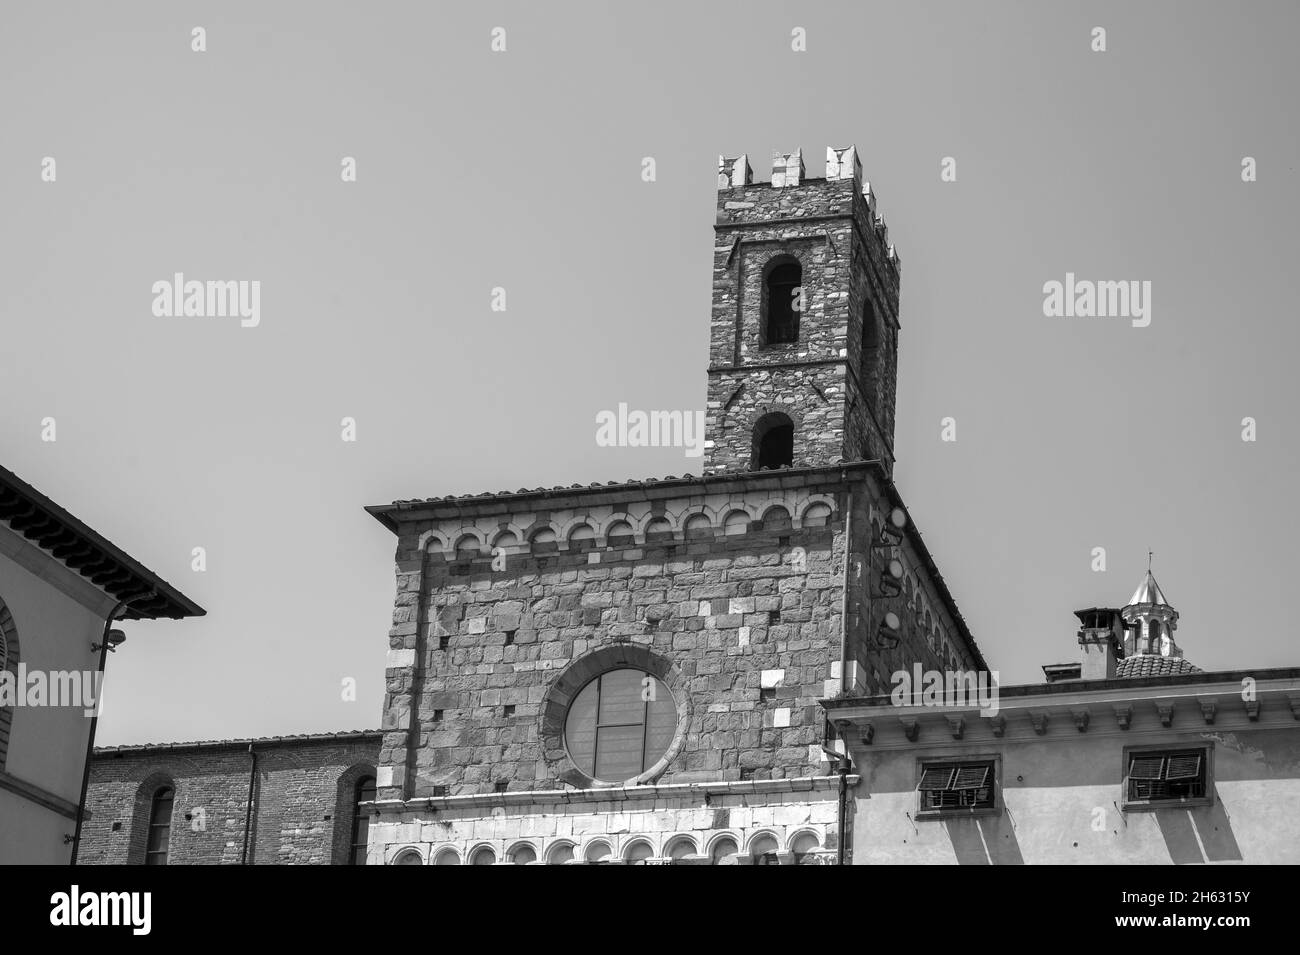 romanische Fassade und Glockenturm der Kathedrale St. martin in lucca, toskana. Sie enthält die wertvollsten Reliquien in lucca, das heilige Antlitz von lucca (italienisch: volto santo di lucca) Stockfoto